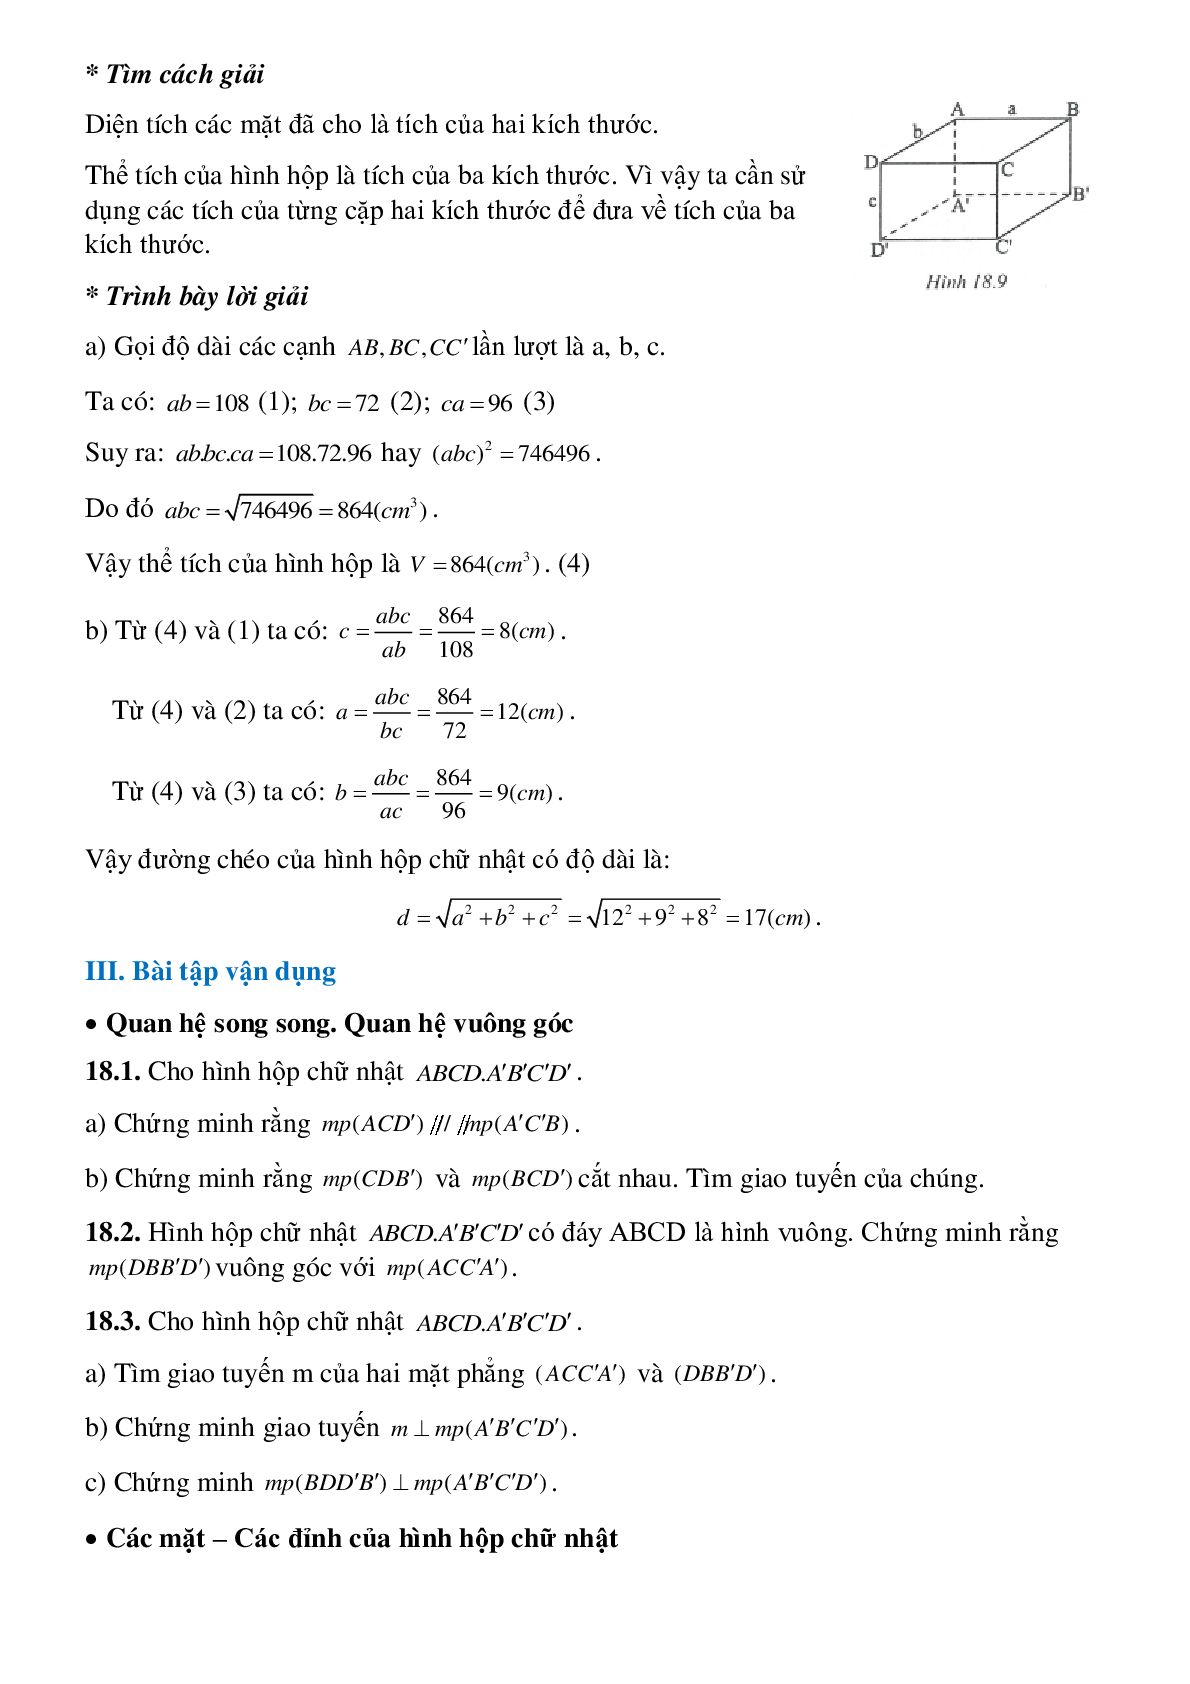 Hình hộp chữ nhật - Hình học toán 8 (trang 5)